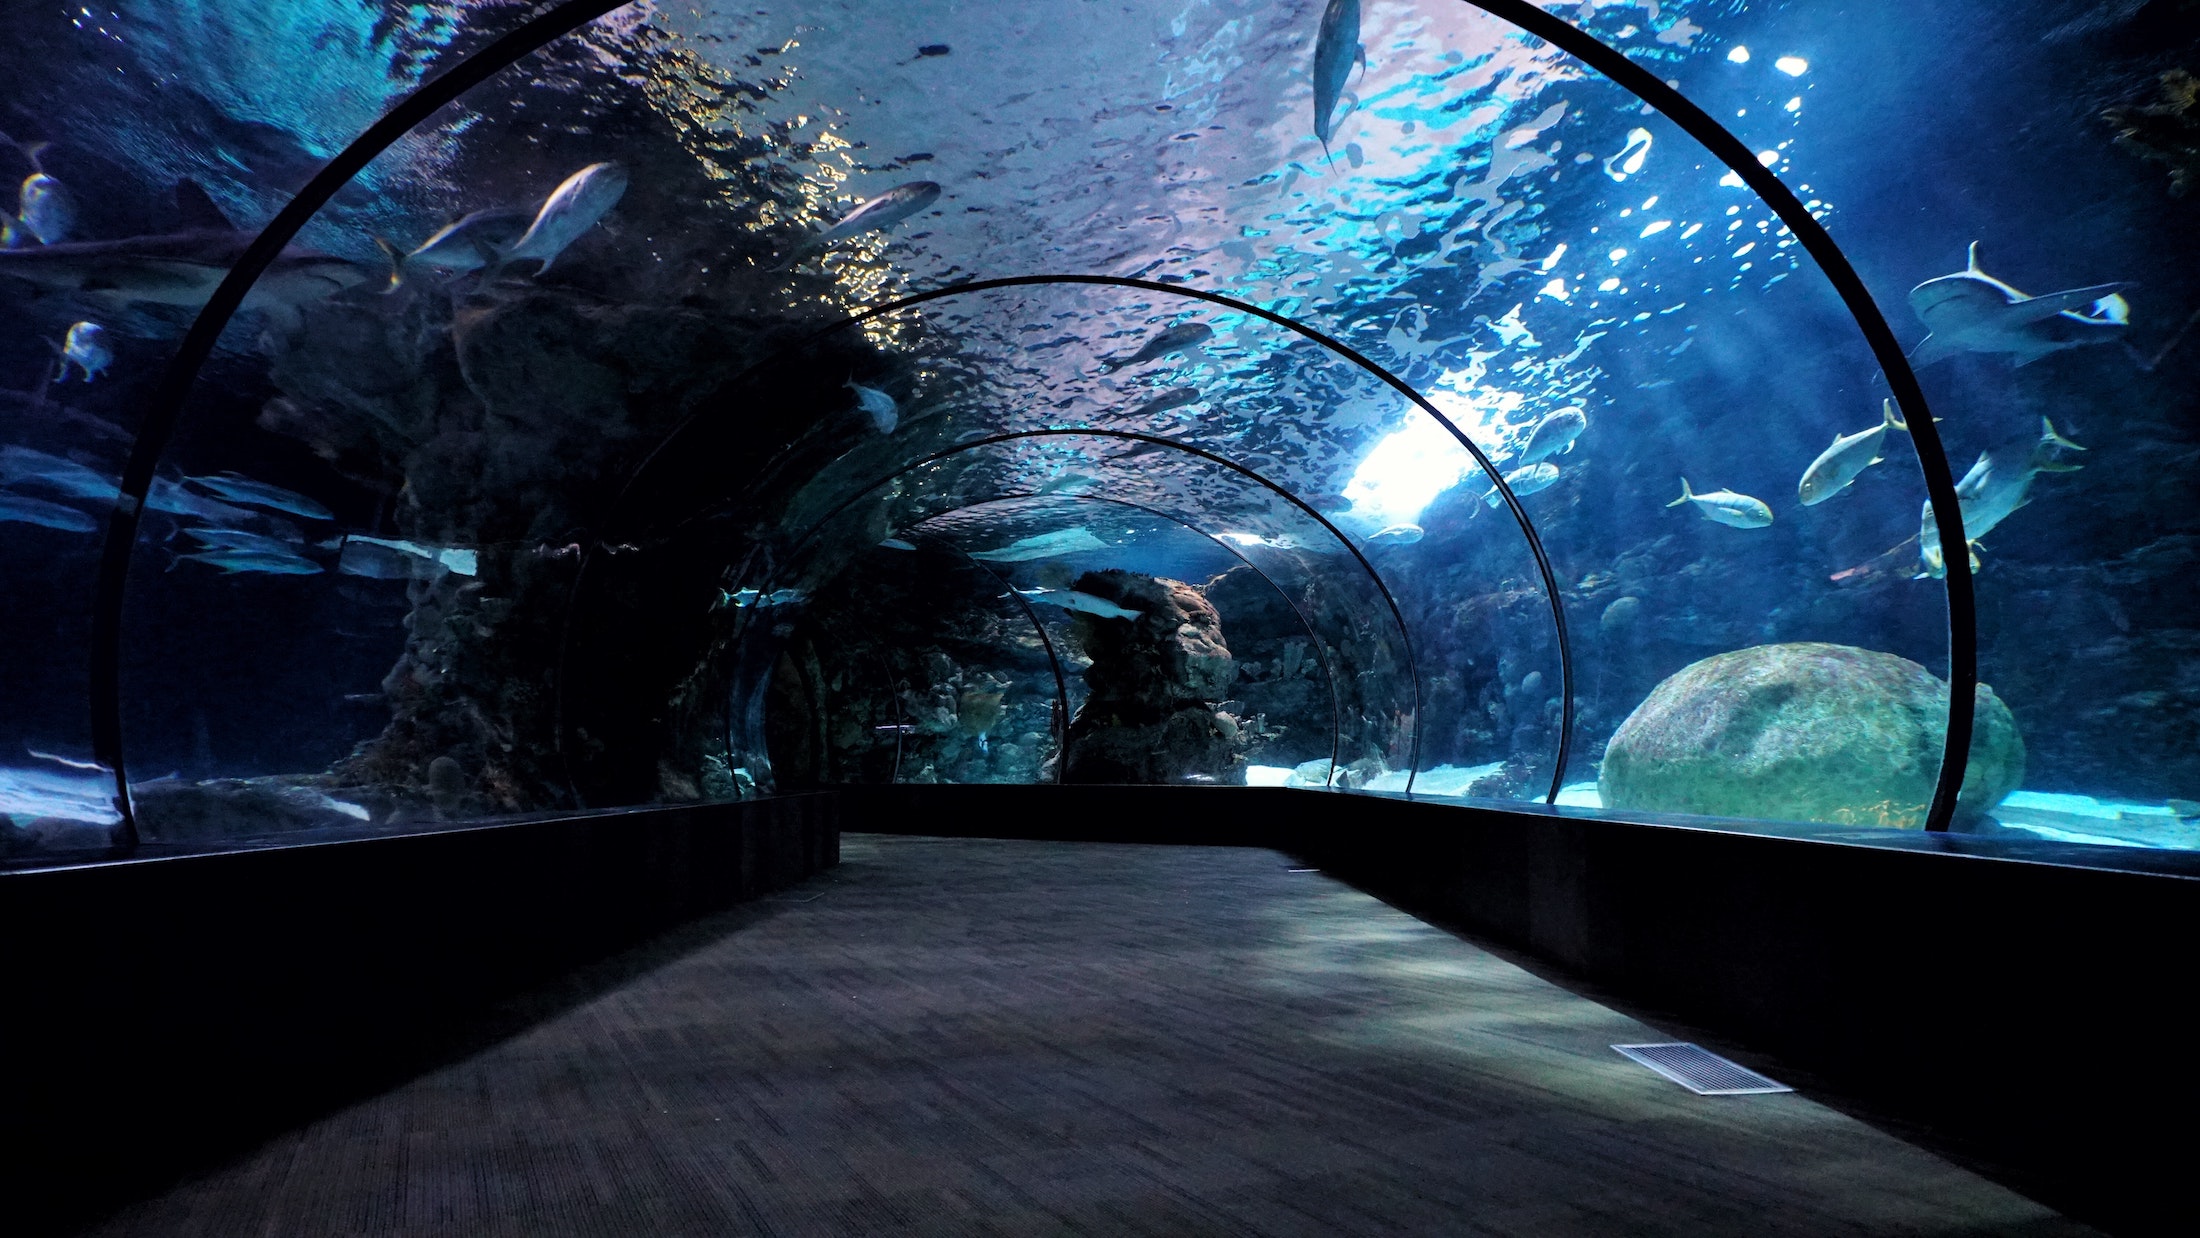 aquarium exhibit that showcases different marine wildlife